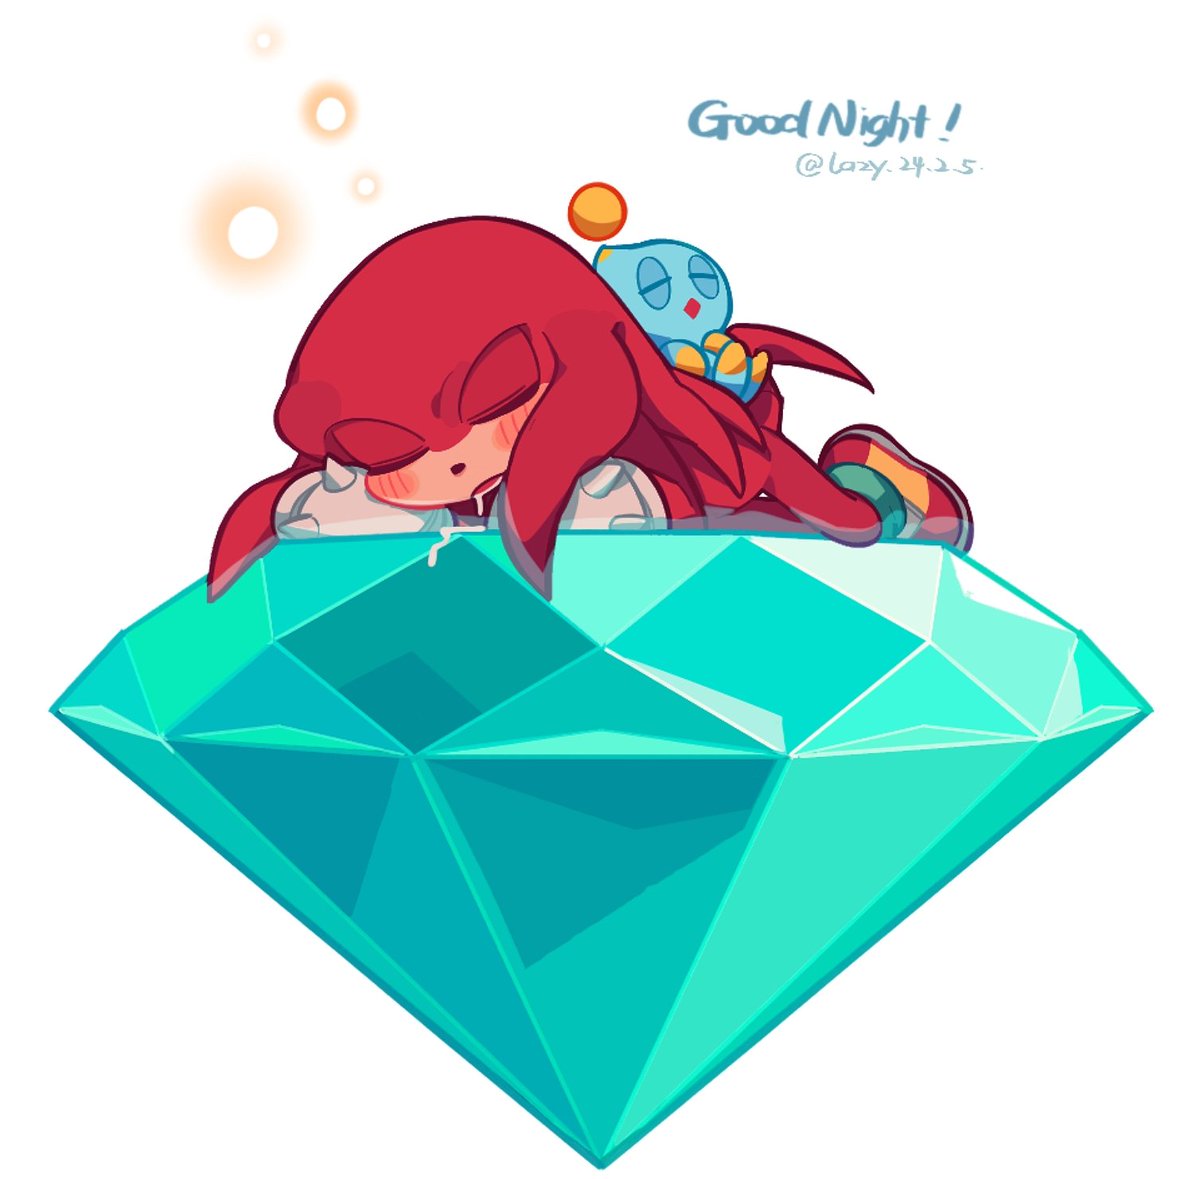 「Good night everyone#KnucklesTheEchidna 」|Yoho_！のイラスト